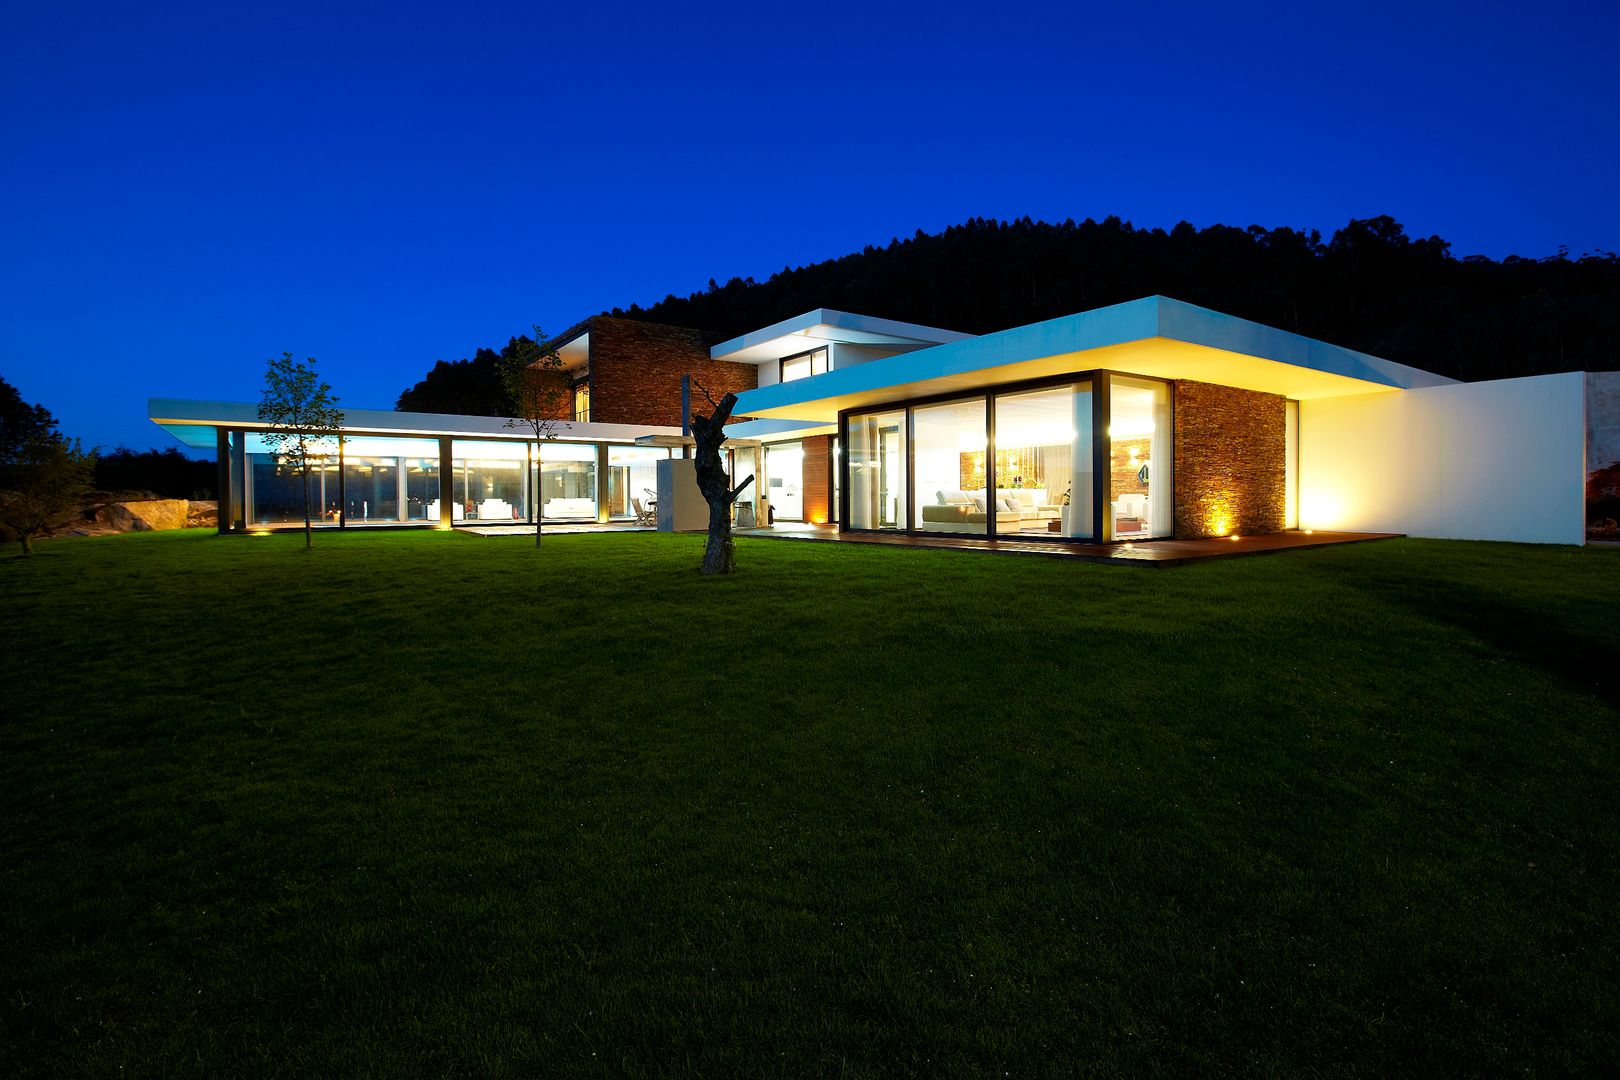 Casa moderna de dimensões generosas e piscina interior, Risco Singular - Arquitectura Lda Risco Singular - Arquitectura Lda Maisons minimalistes